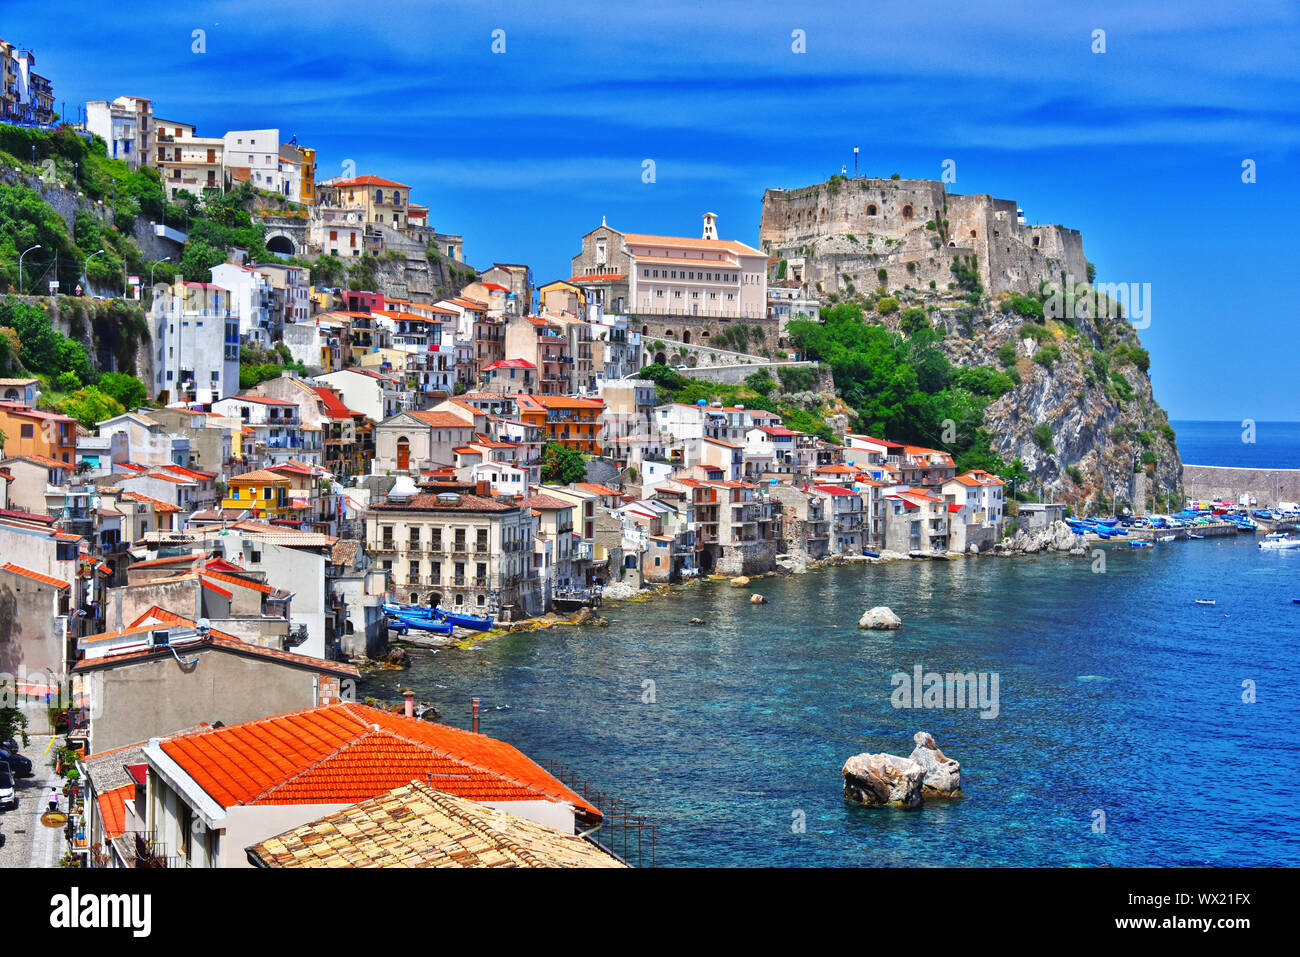 The city of Scilla in the Province of Reggio Calabria, Italy Stock Photo